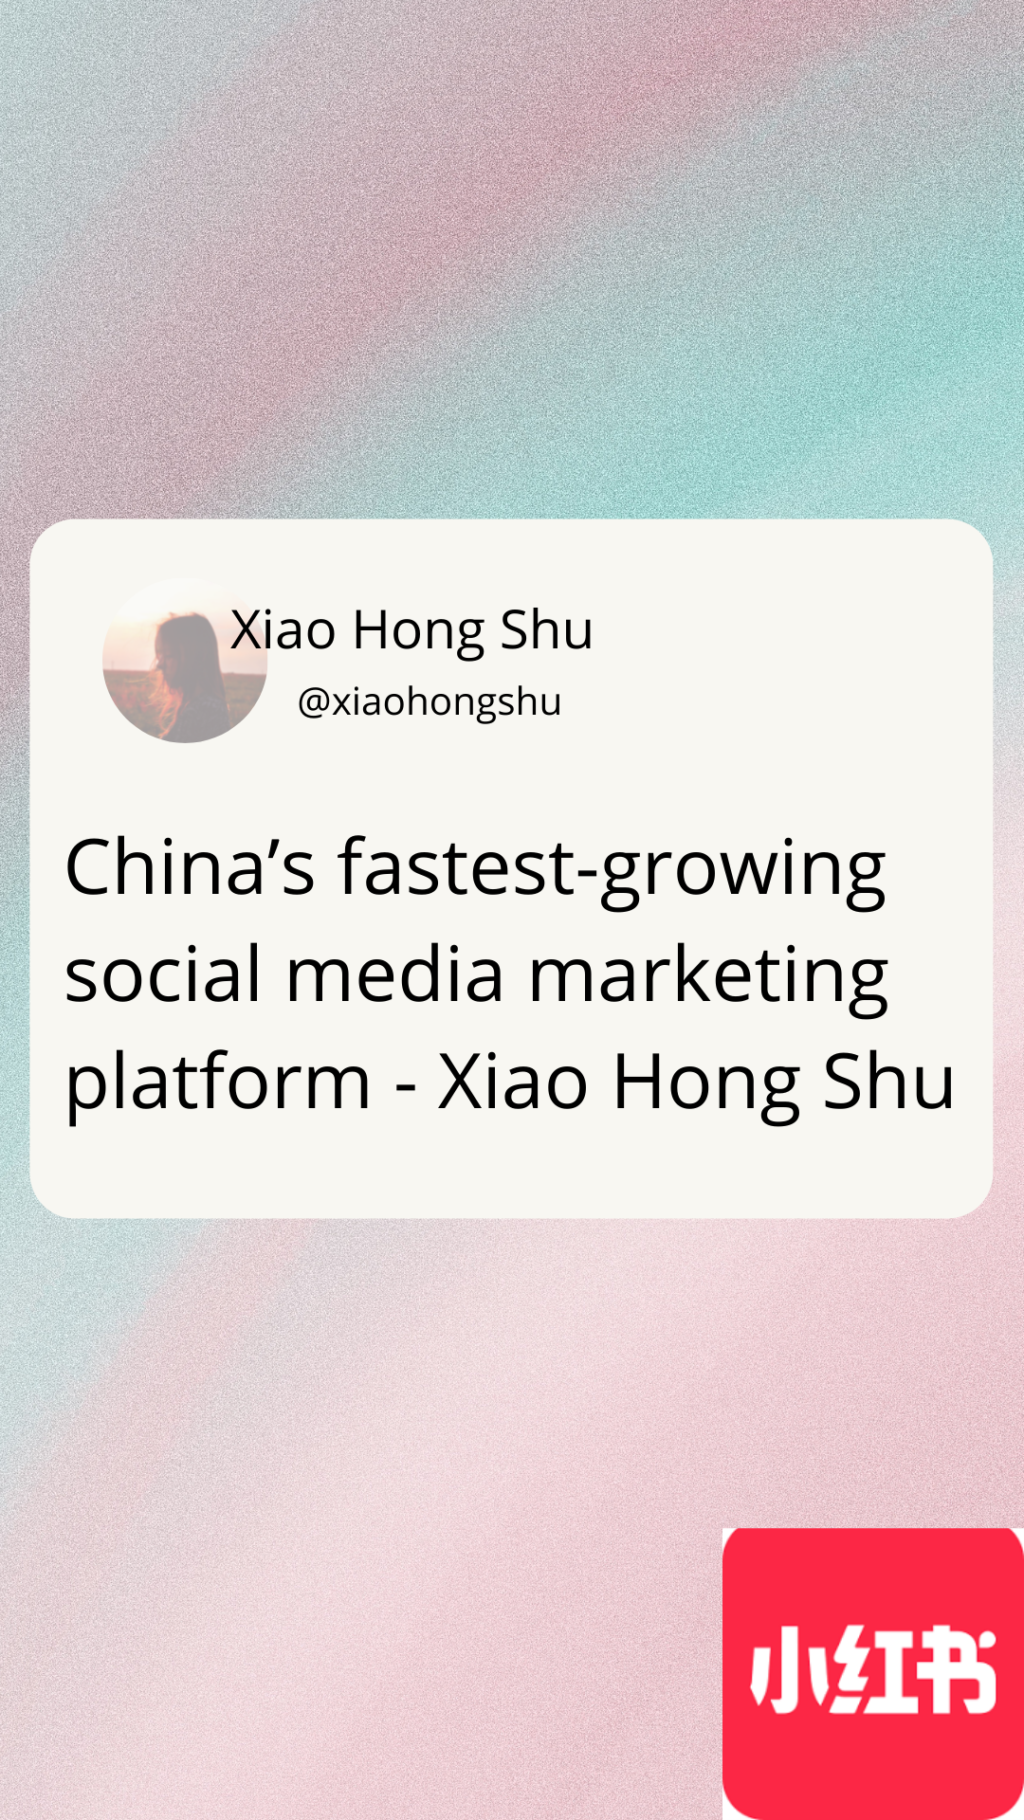 China’s fastest-growing social media marketing platform - Xiao Hong Shu